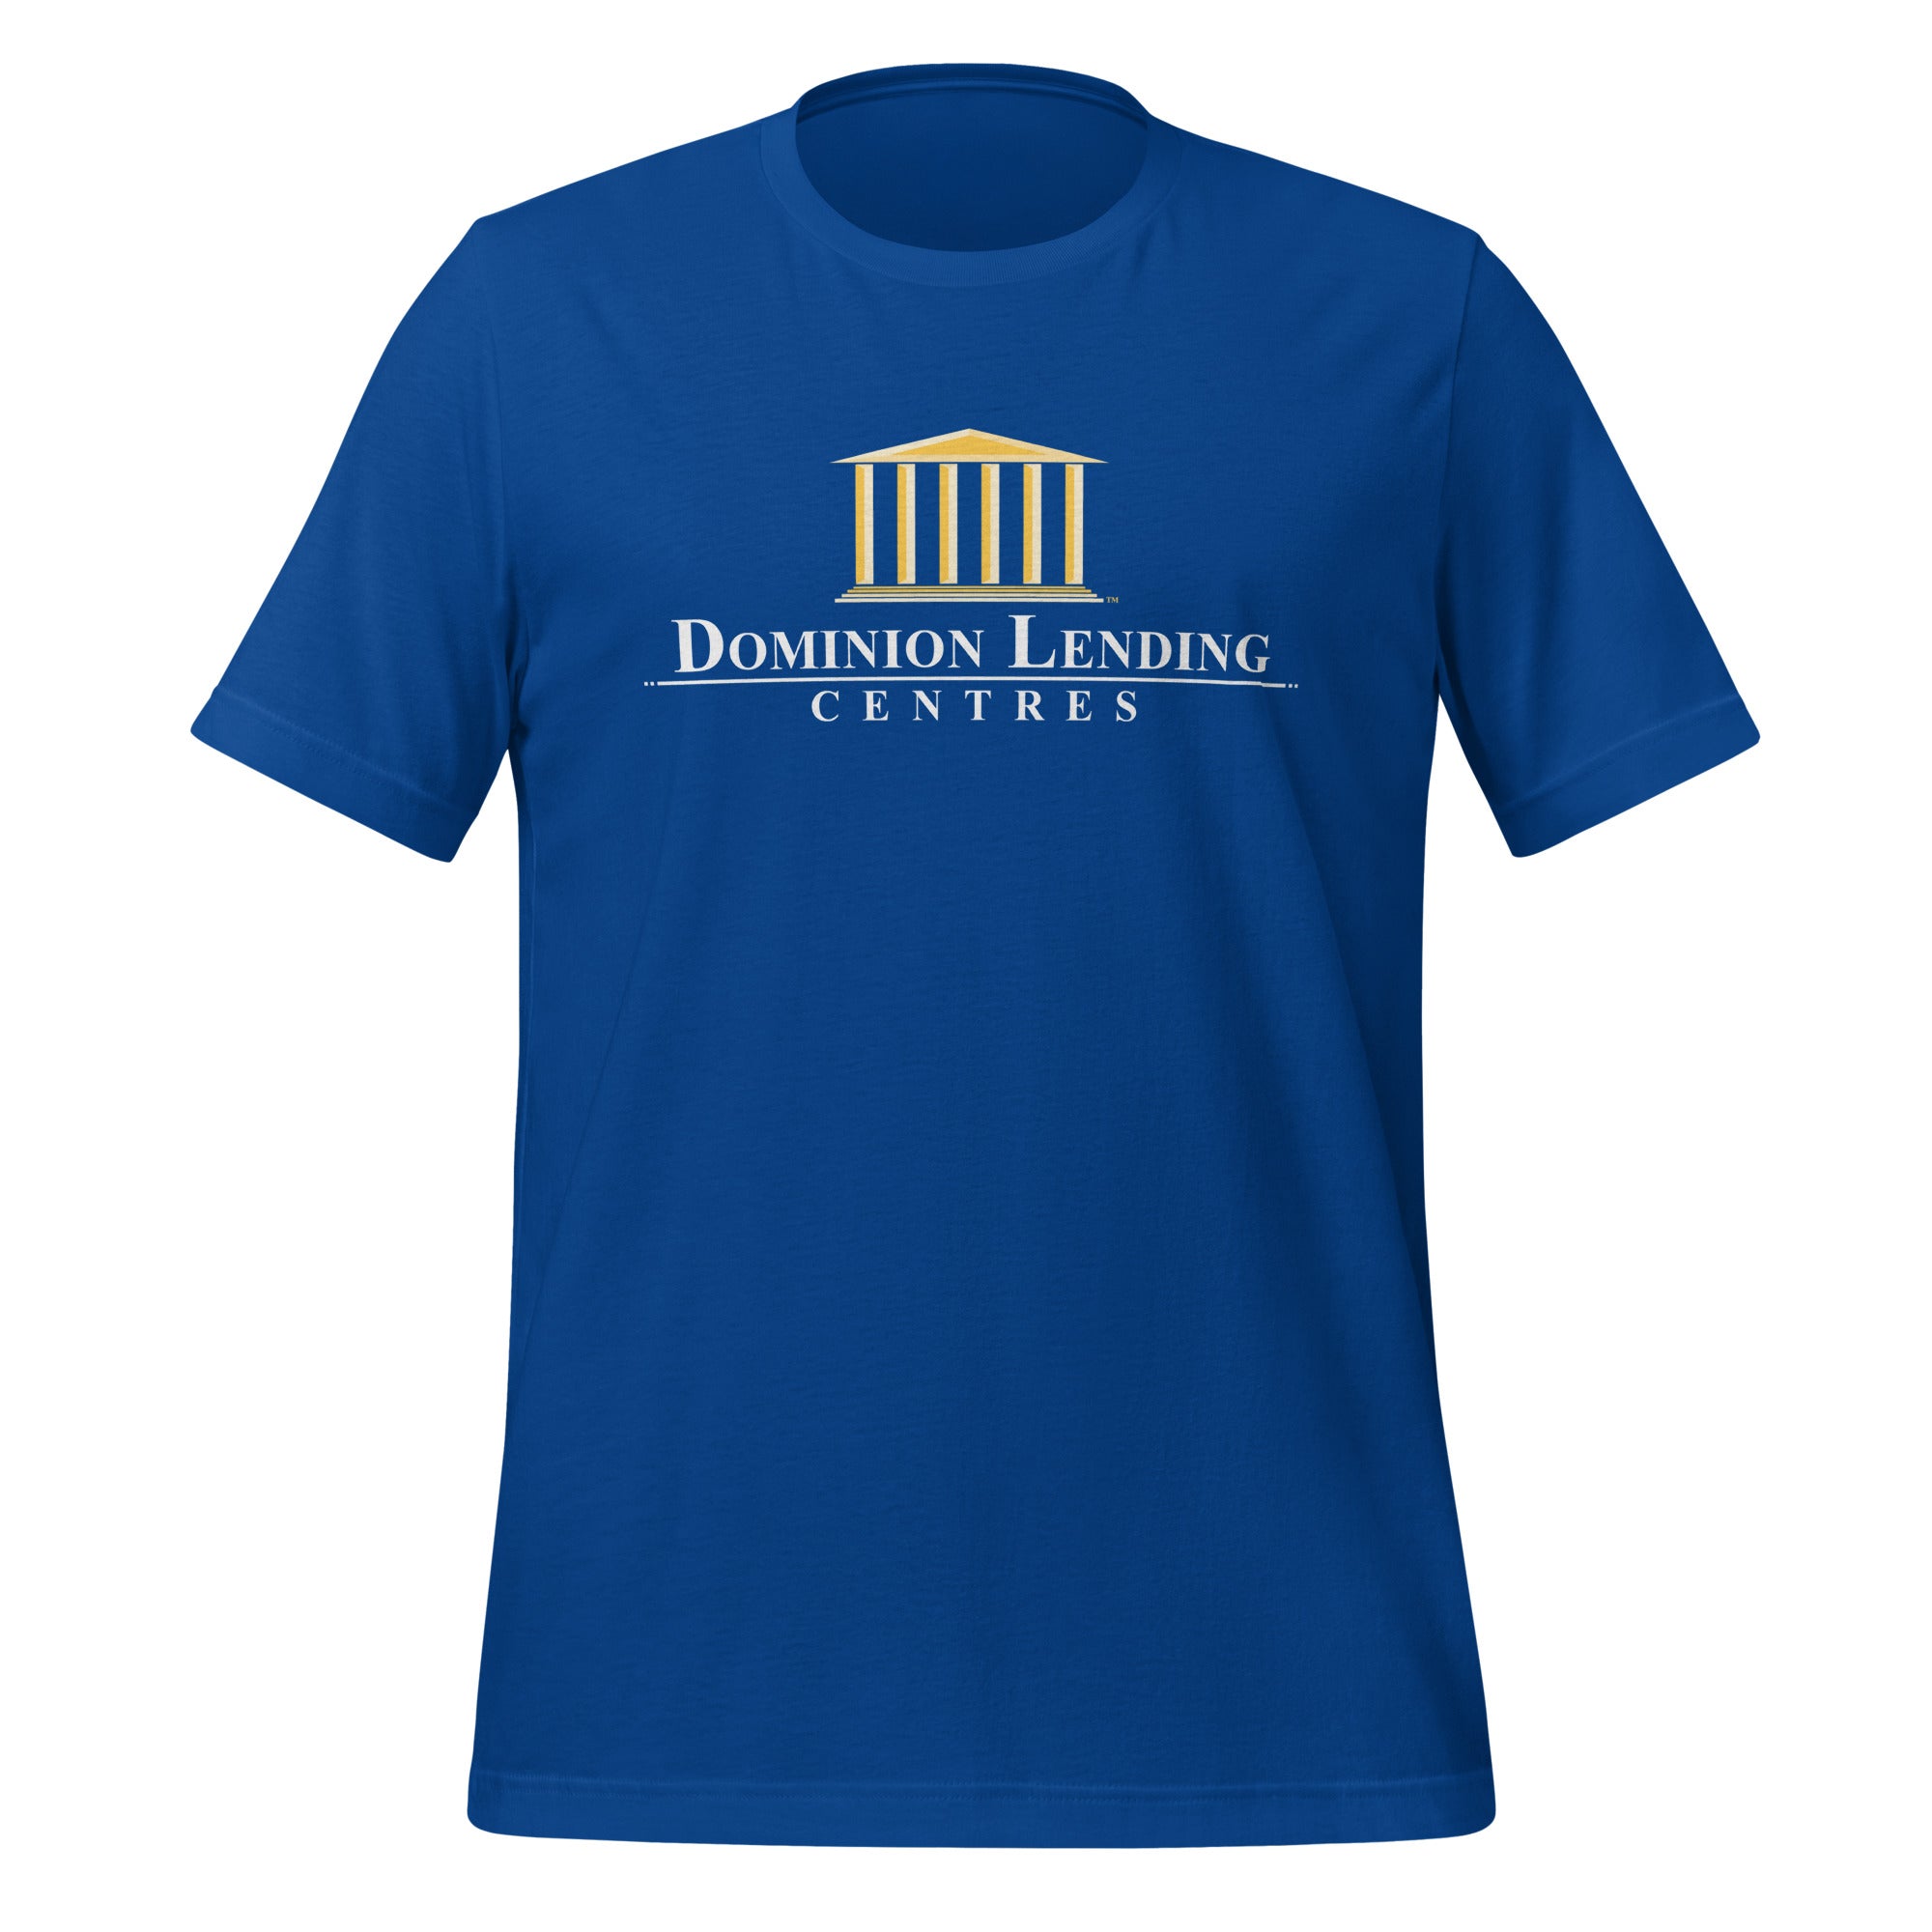 Dominion Lending Centres Unisex Blue T-Shirt